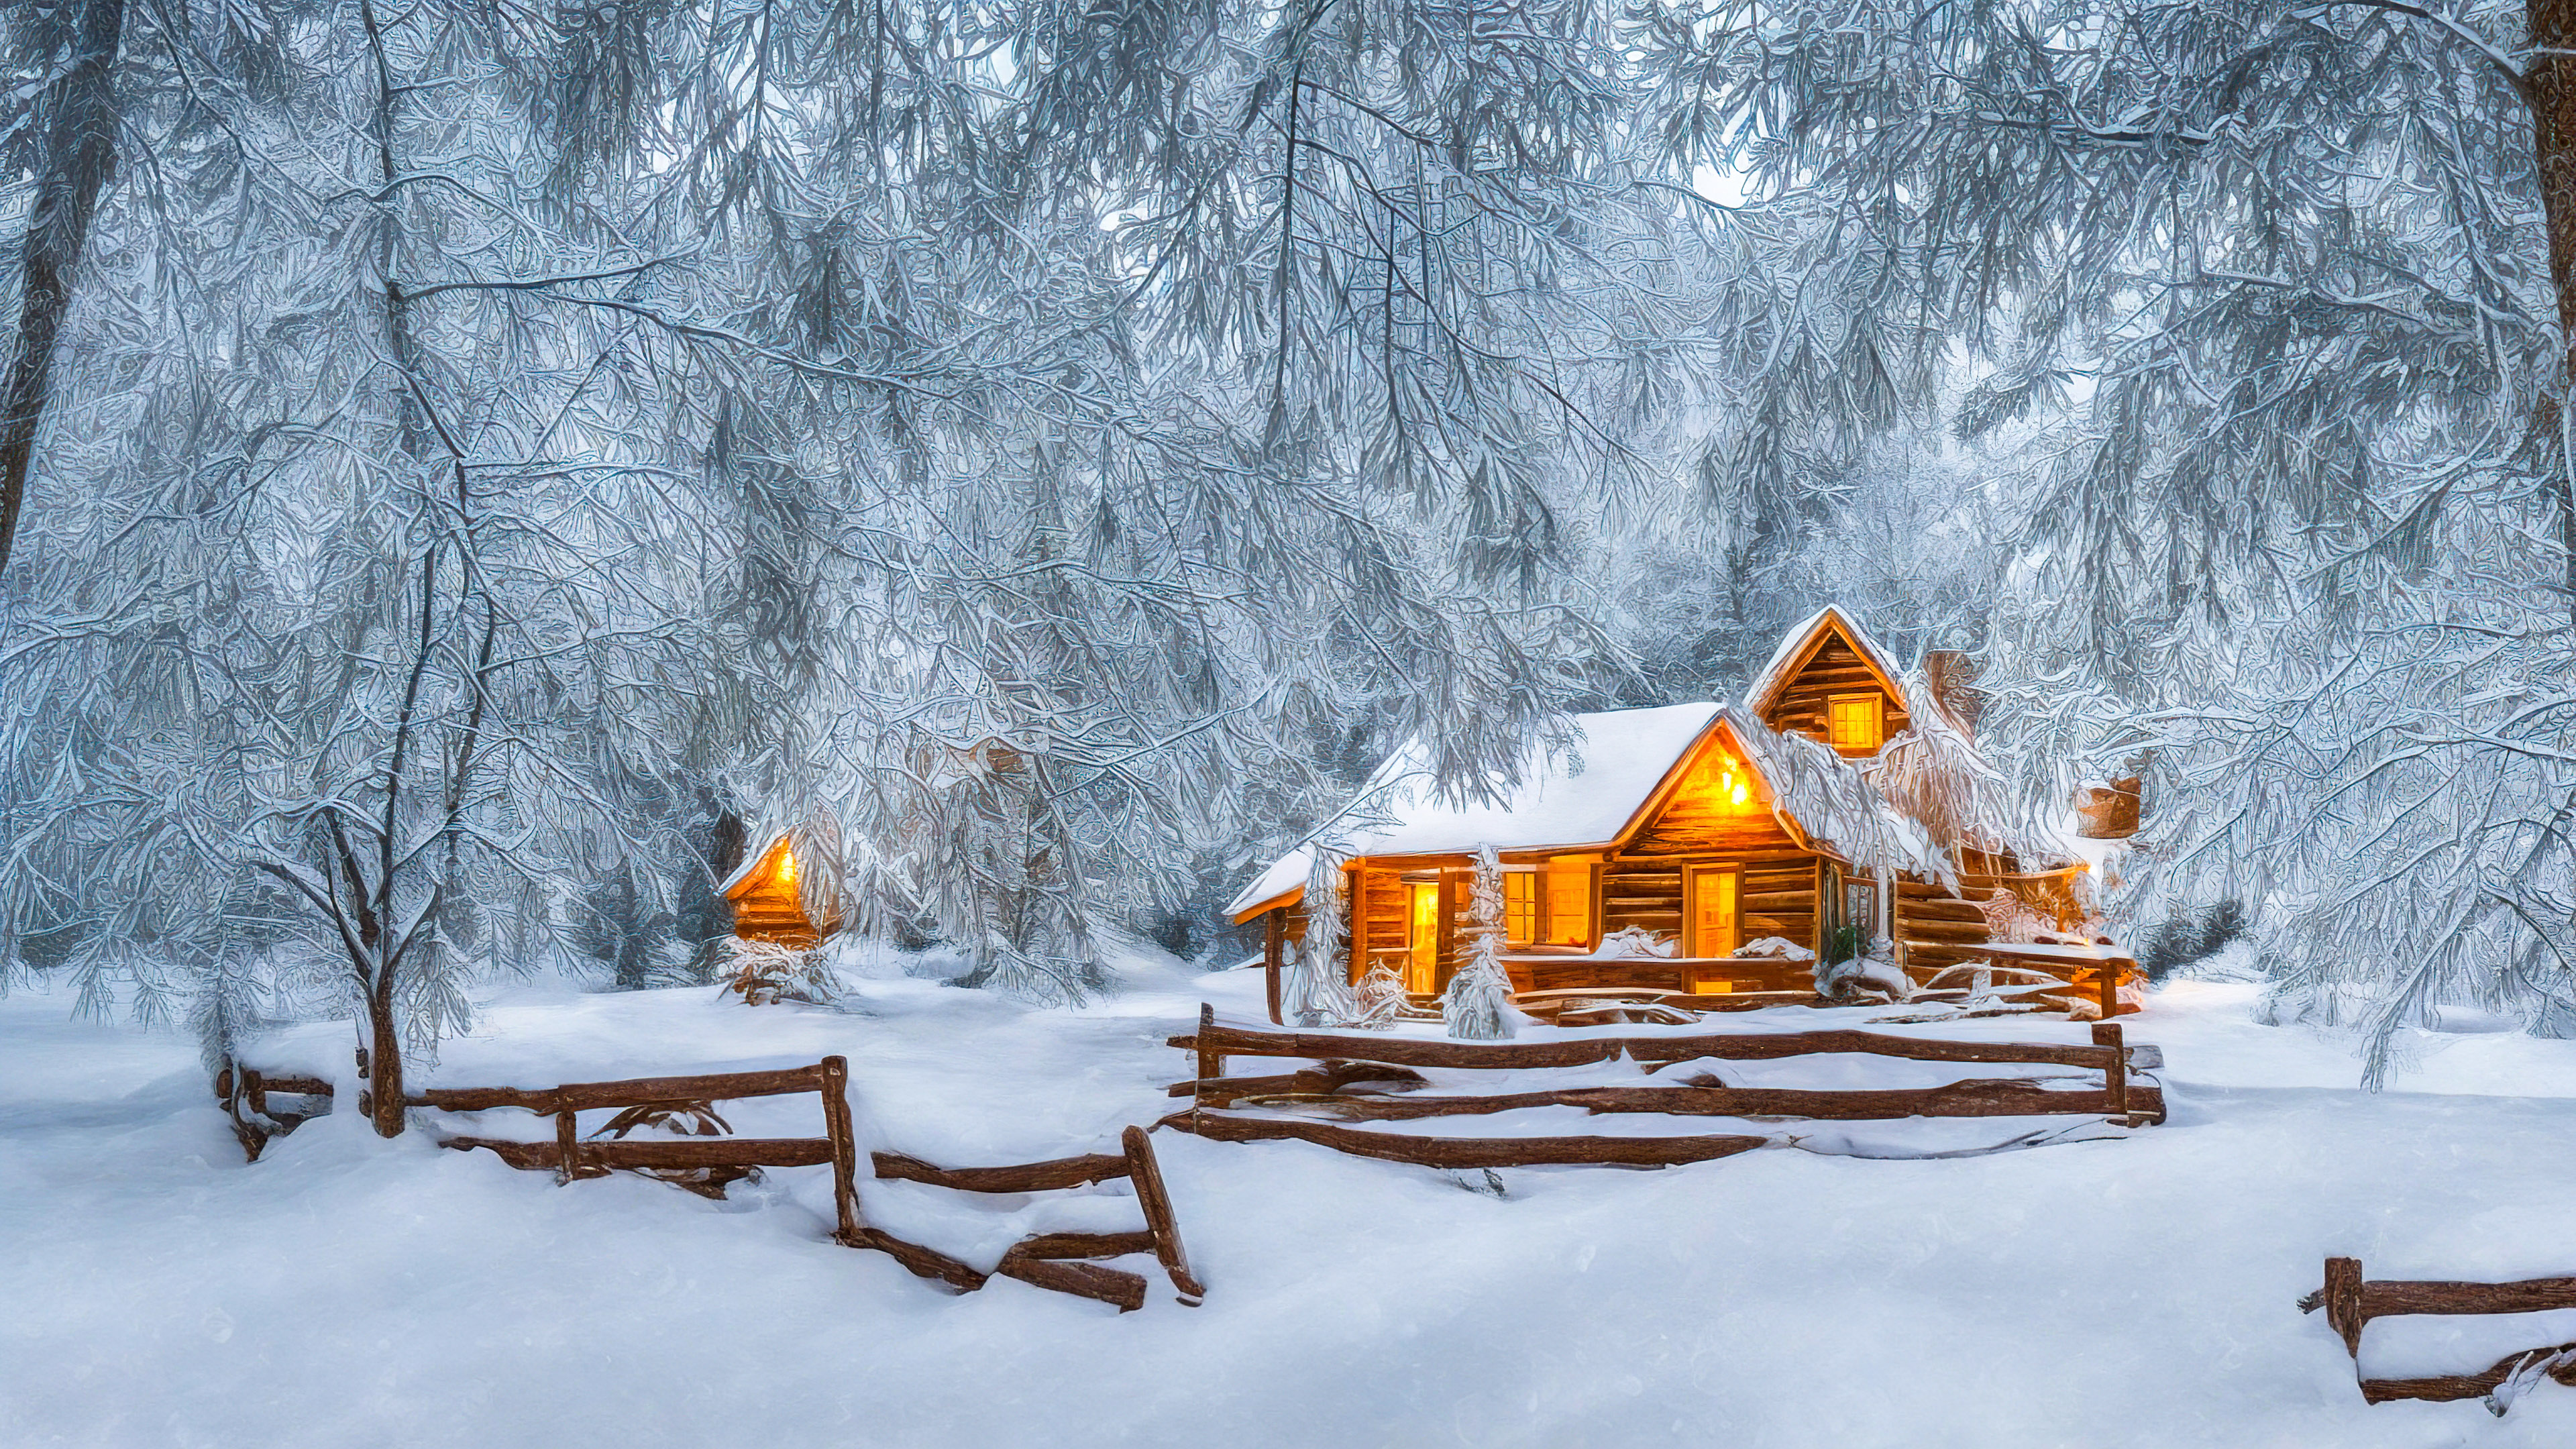 Vivez la tranquillité de nos fonds d'écran en HD des paysages en résolution 1920x1080, présentant un merveilleux paysage hivernal avec des arbres couverts de neige et une cabane confortable ornée de lumières de fête, et laissez votre écran devenir un portail vers un refuge paisible sous la neige.